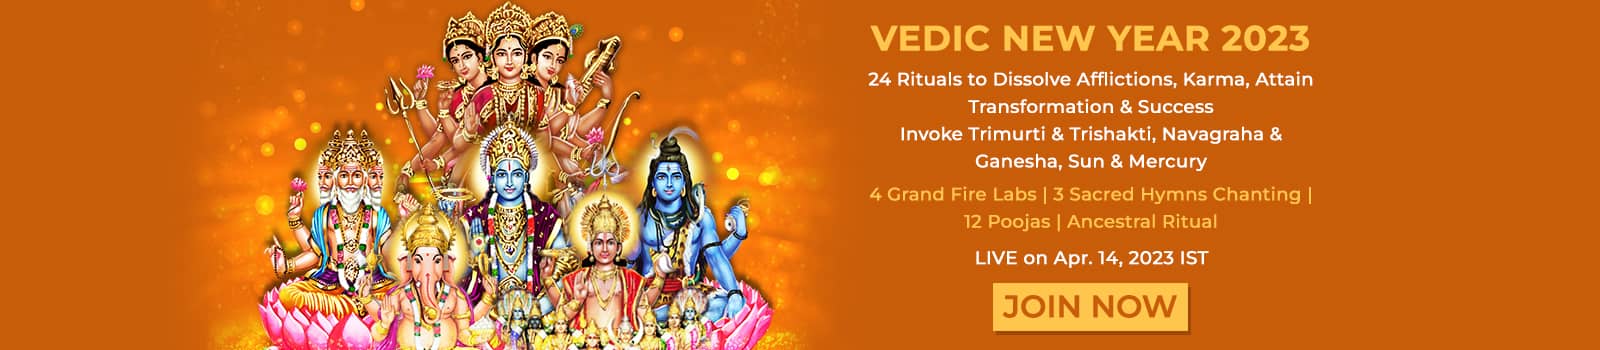 Vedic New Year